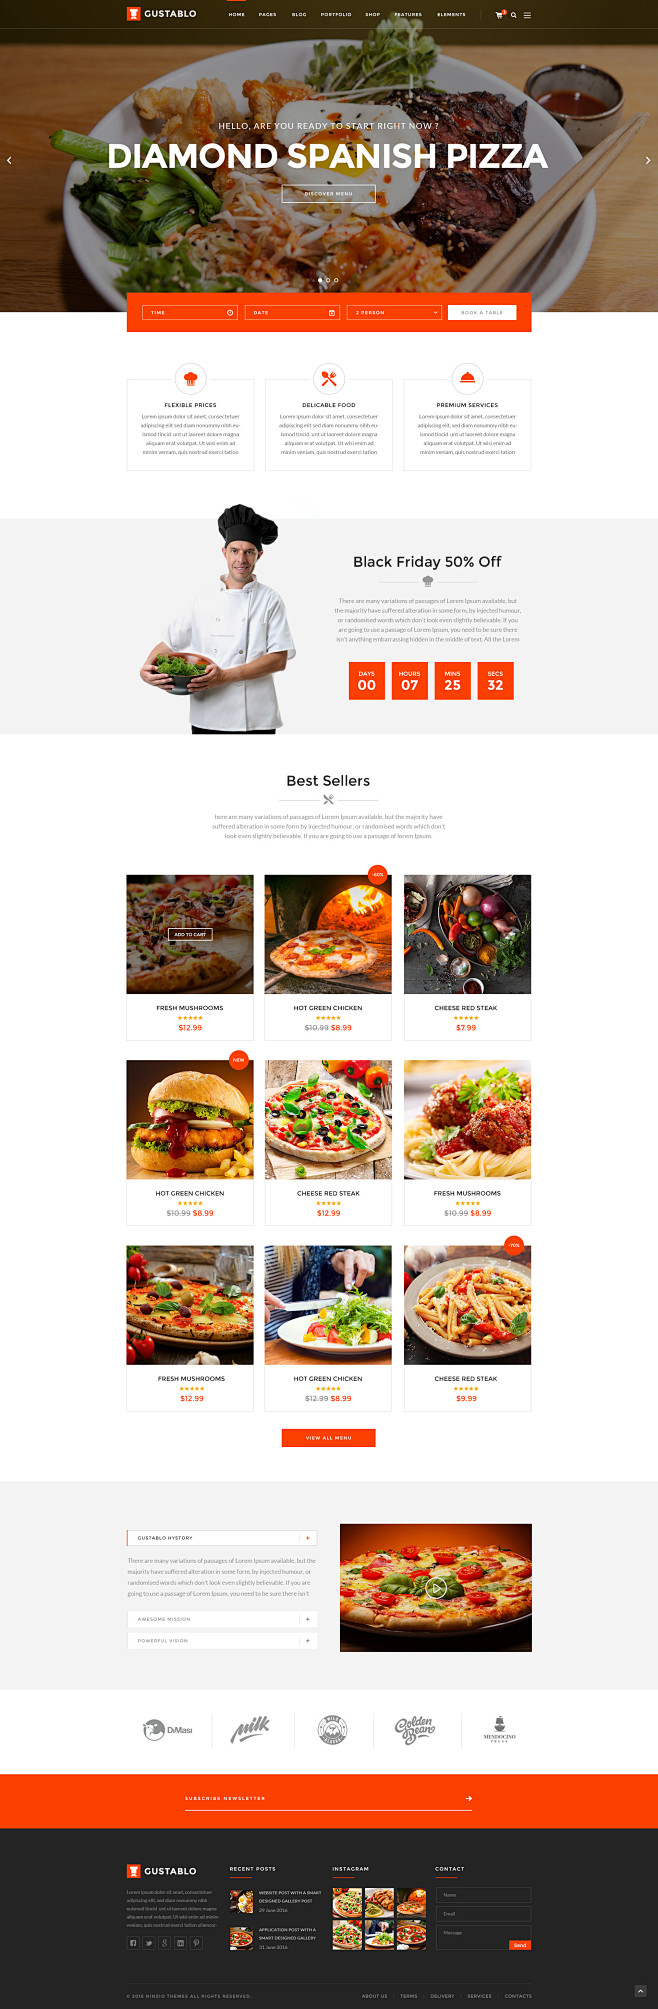 整套国外美食网站网页版式设计模板素材 (...